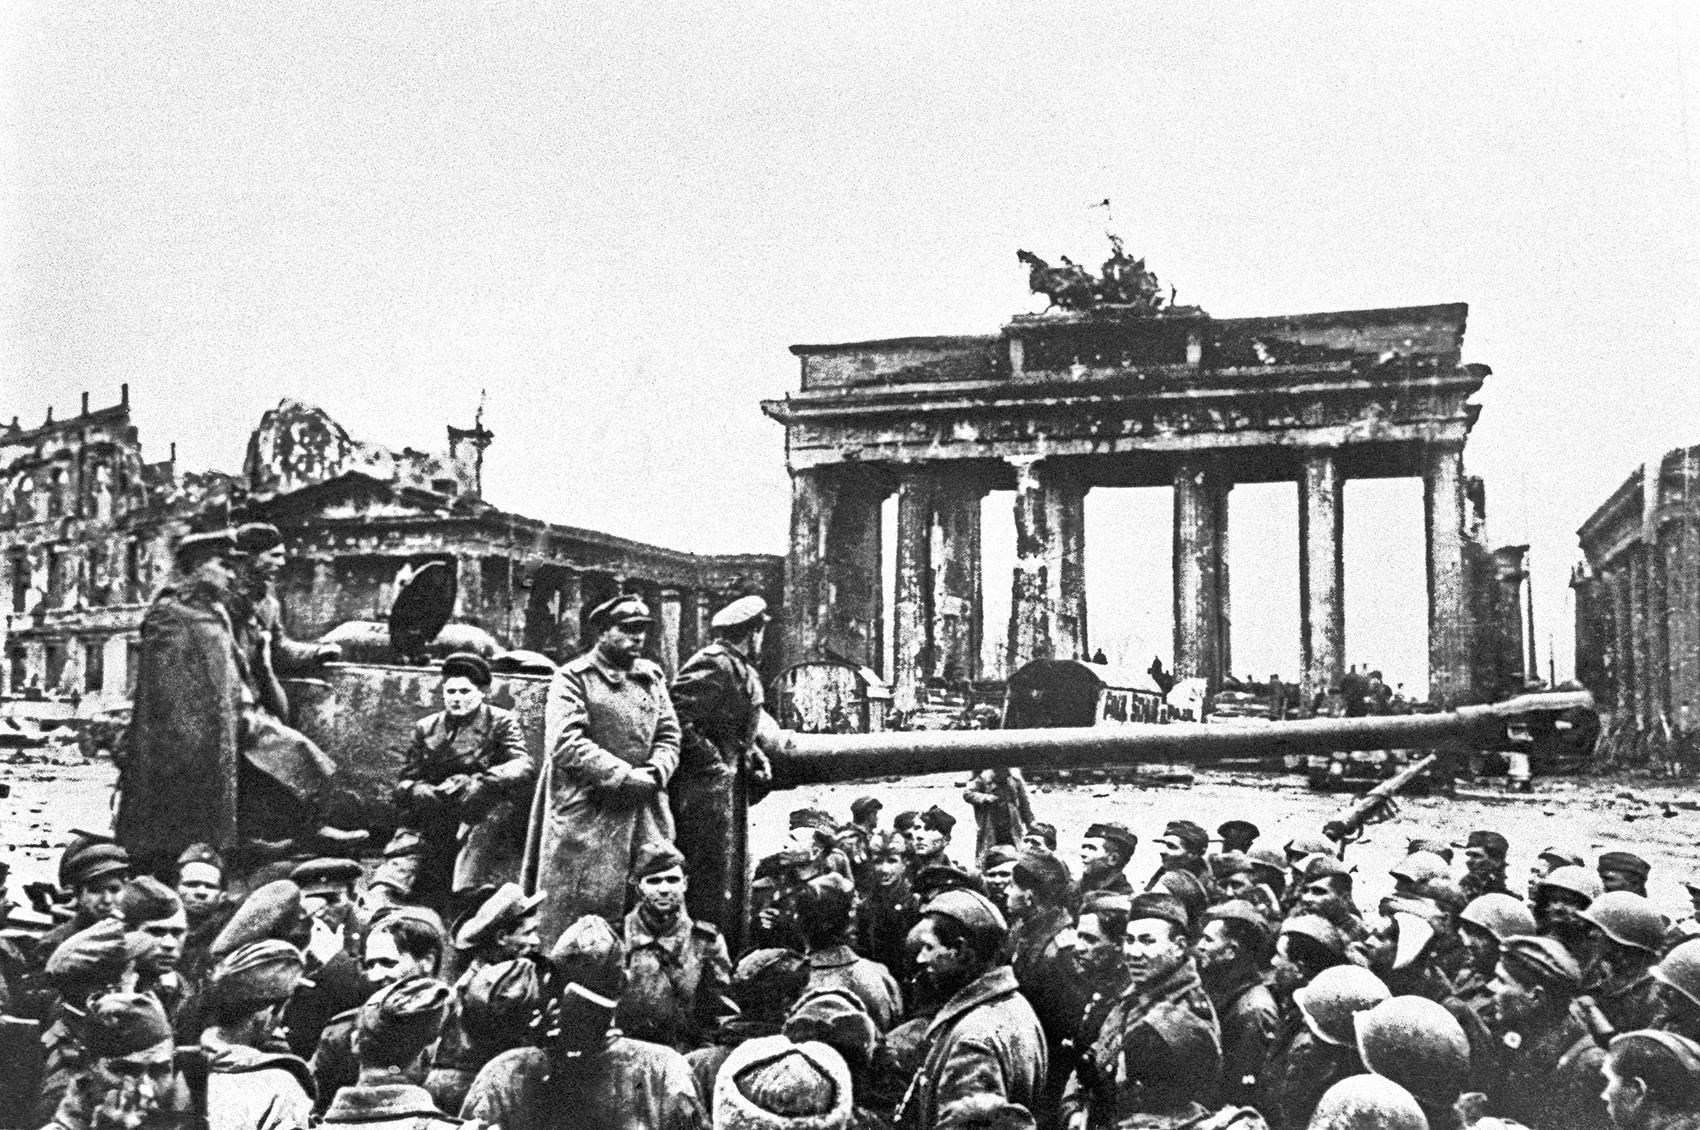 Rijetka fotografija sovjetskih trupa u Berlinu, svibanj 1945.